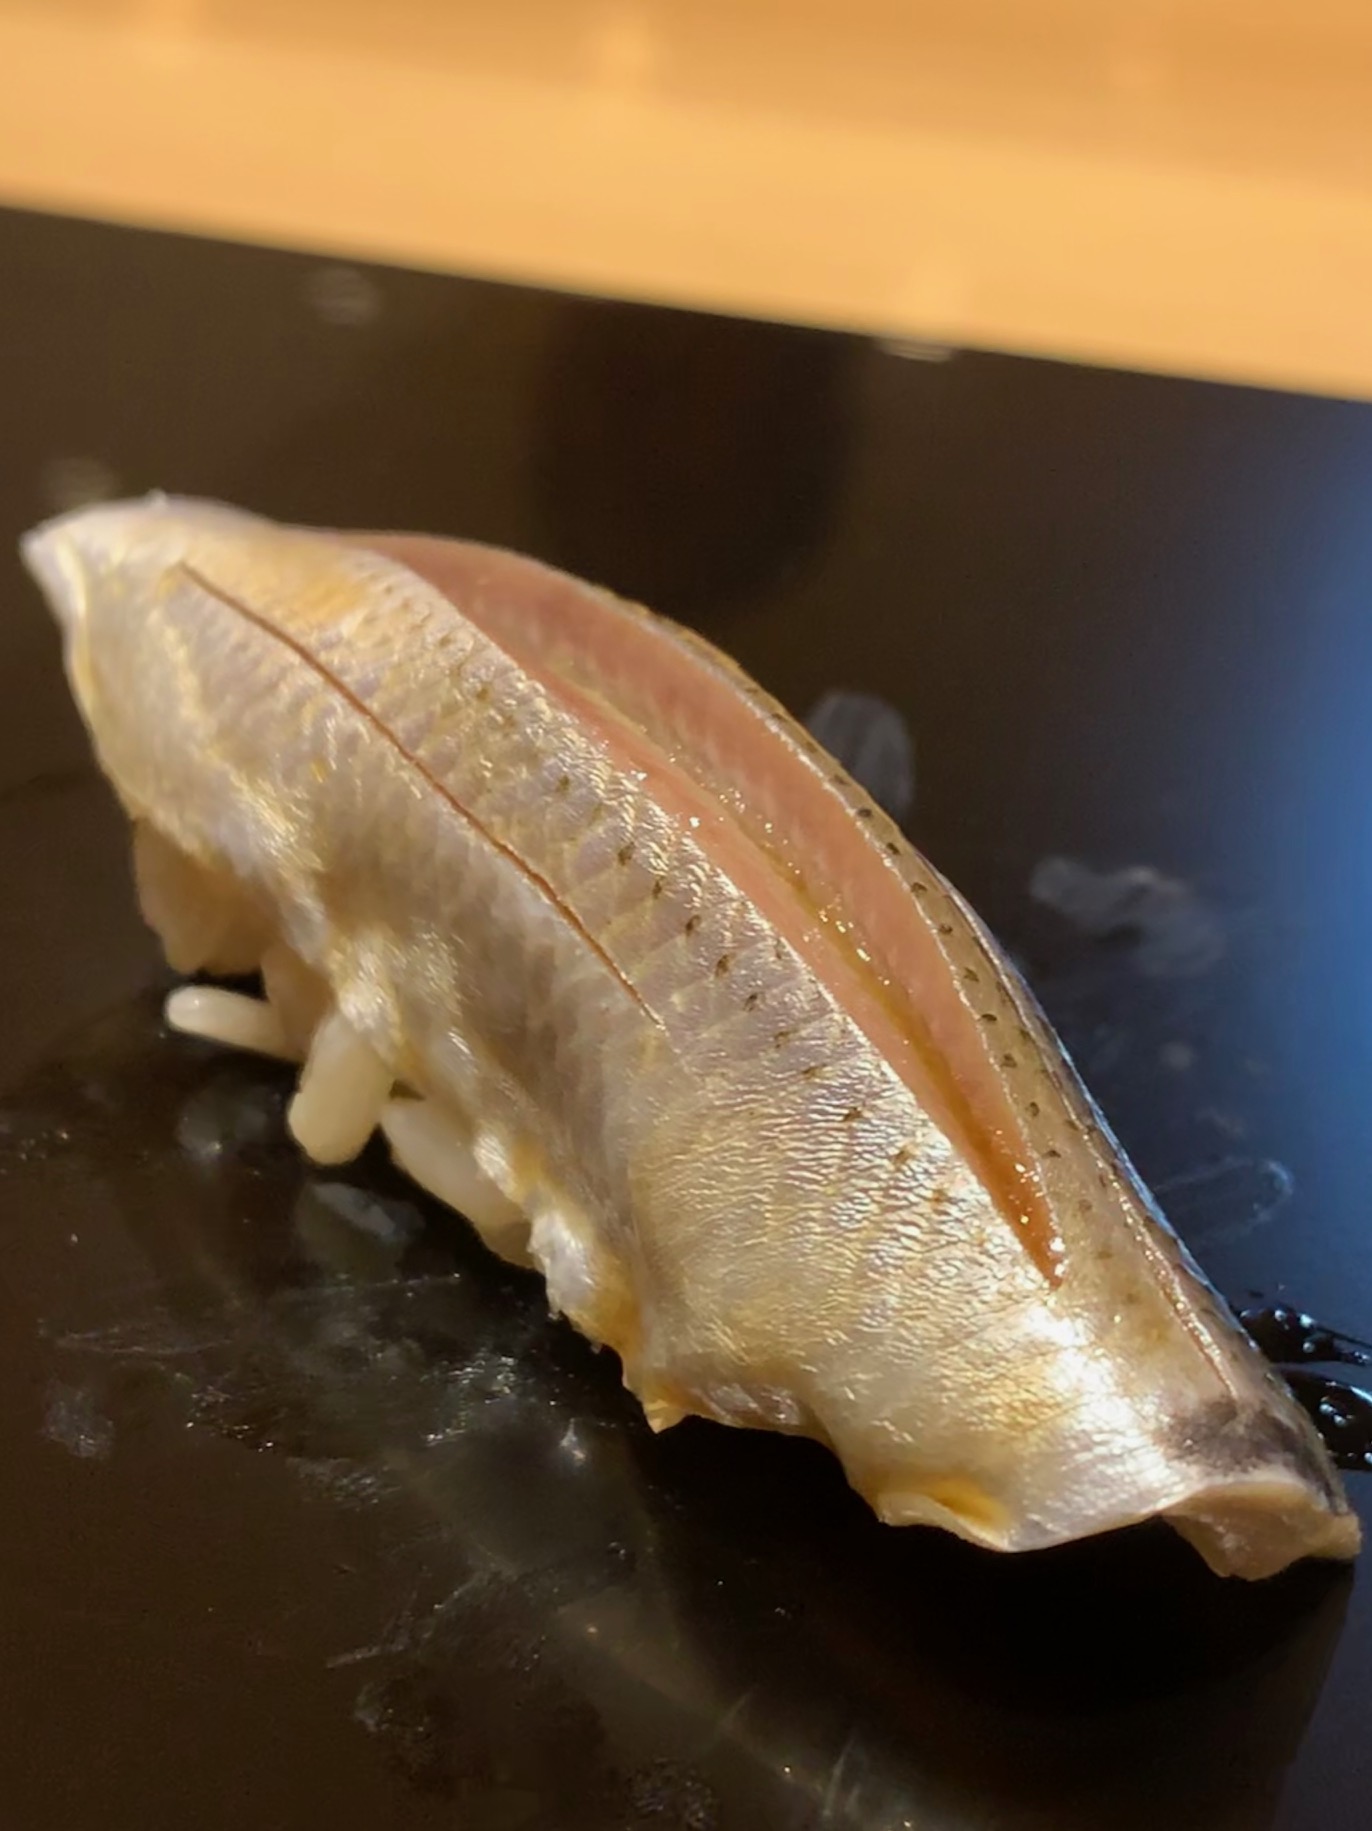 bite sized sushi at Sushi Issey, Kanazawa